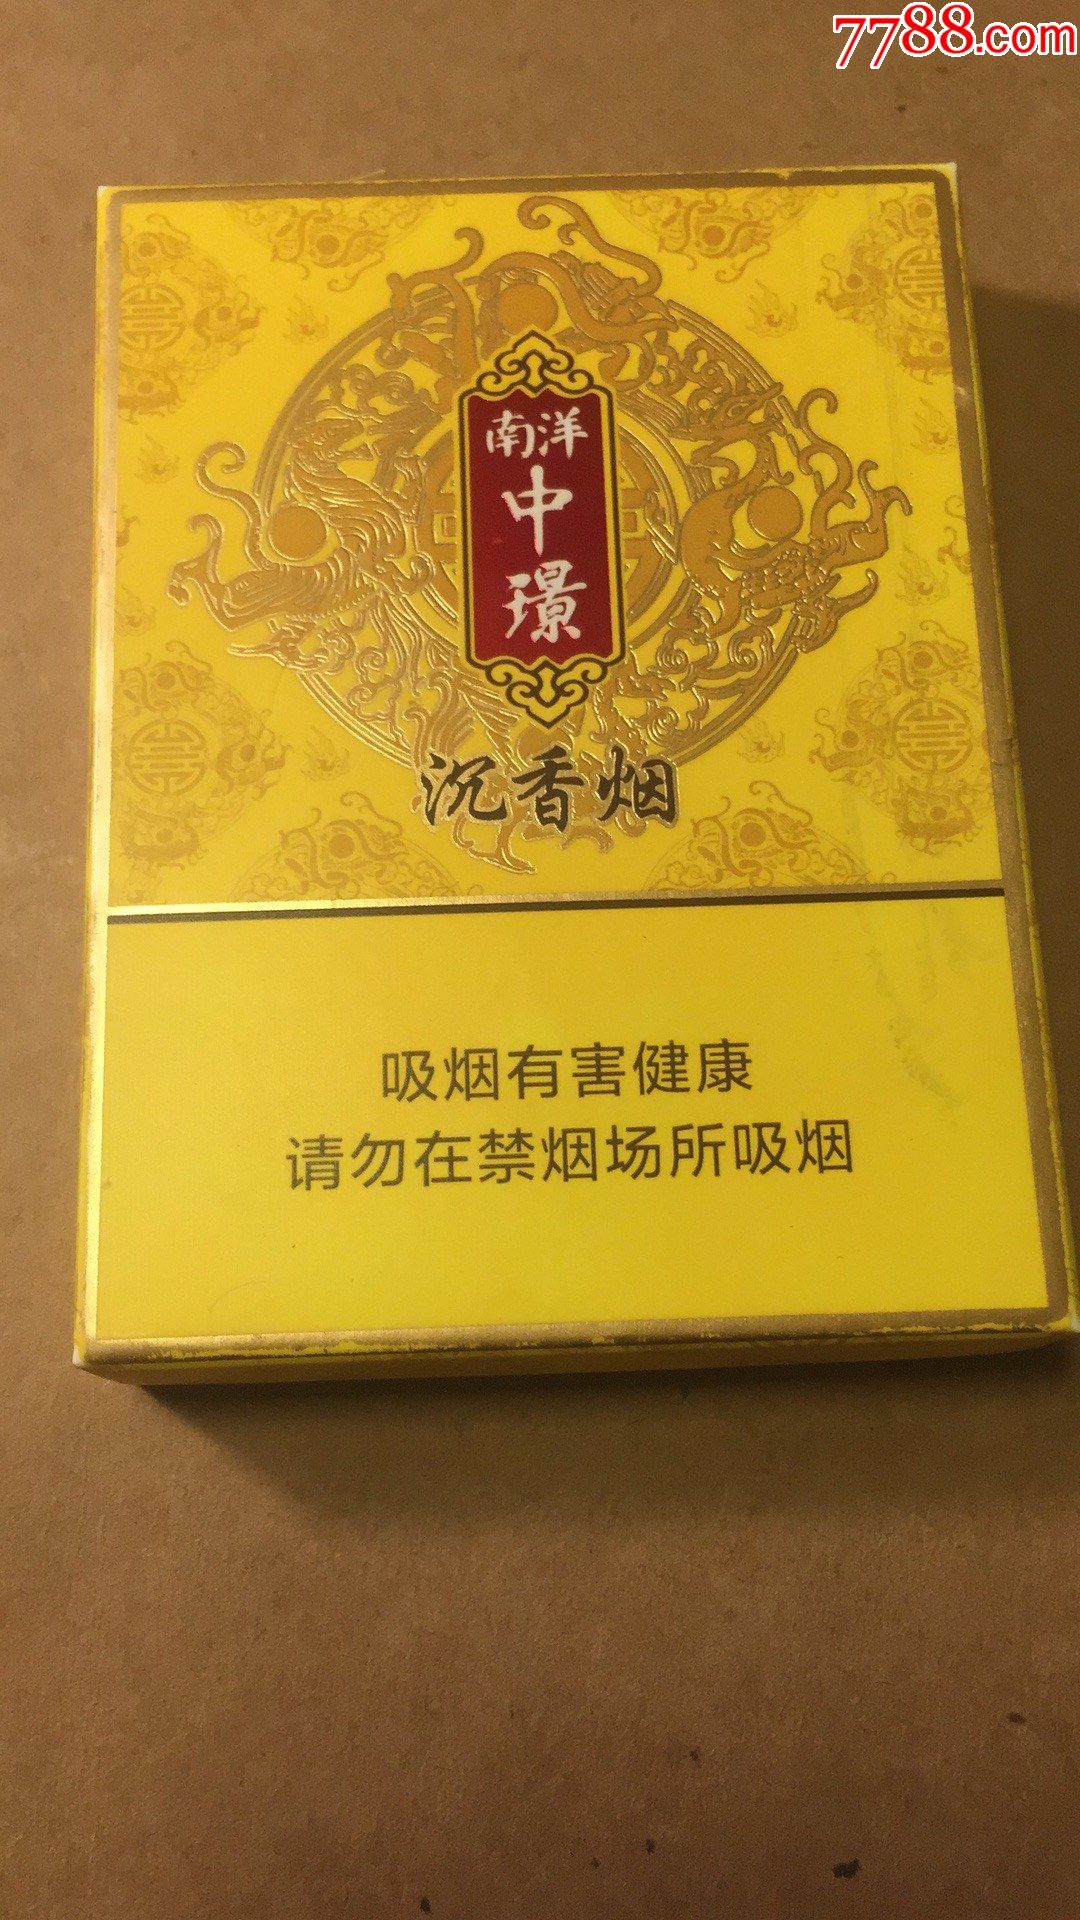 沉香香烟 香港图片